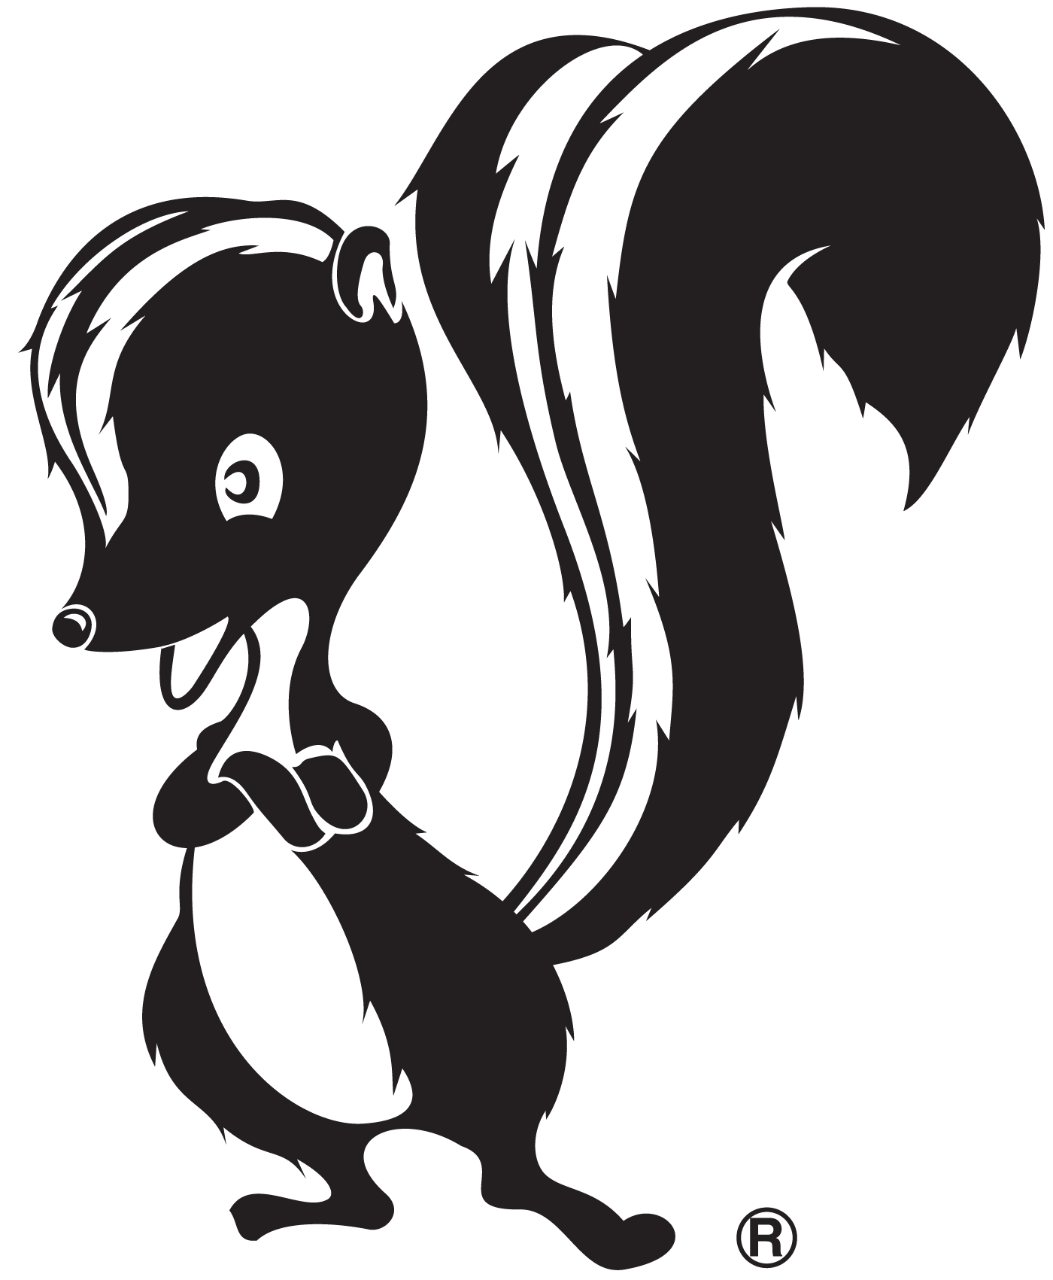 Skunk Works® logo